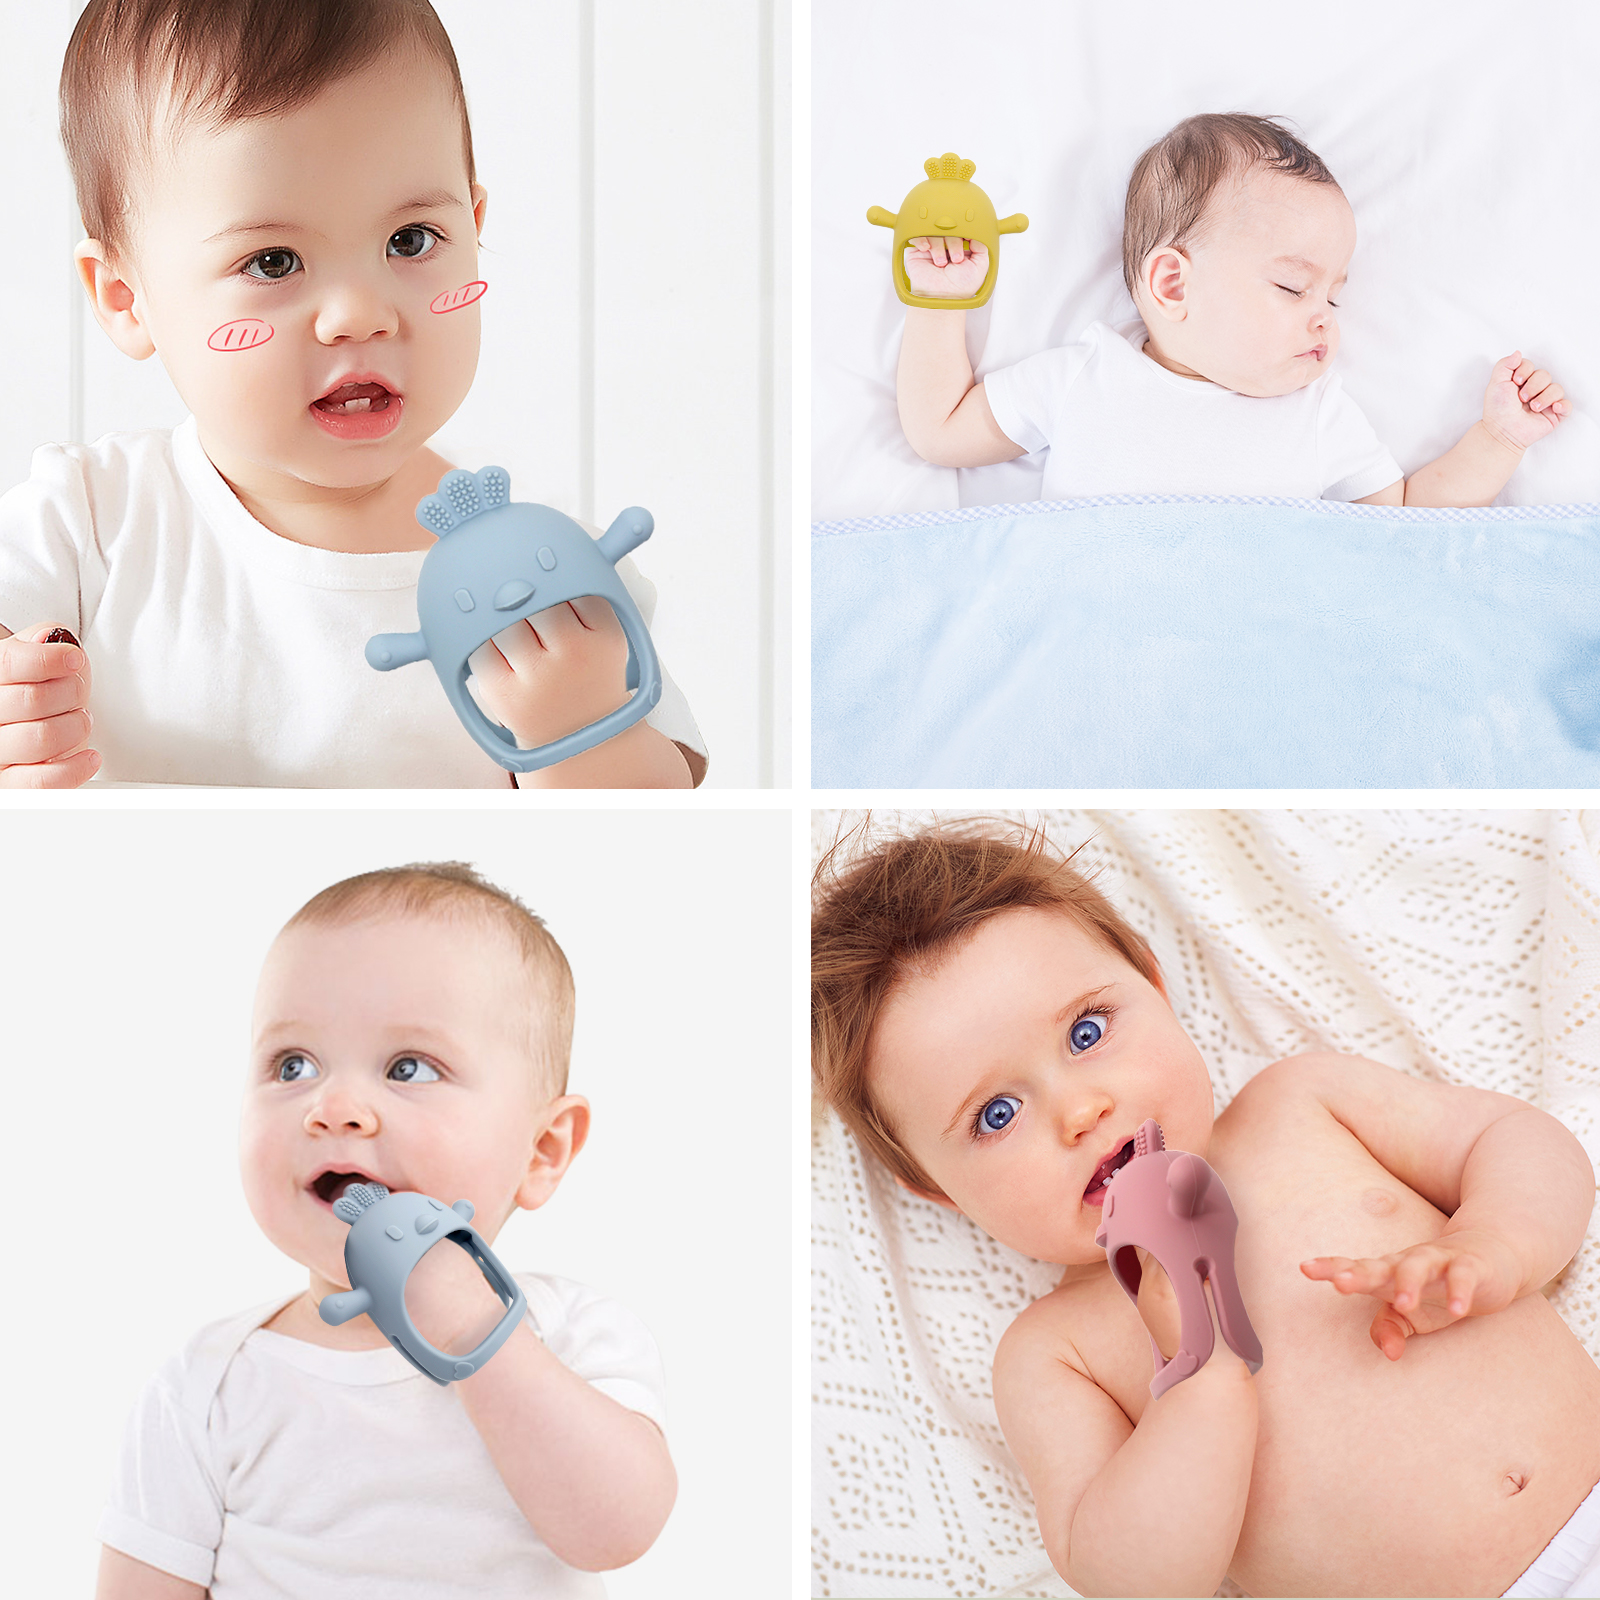 Hvorfor babyer har brug for silikonebytlegetøj |Melikey